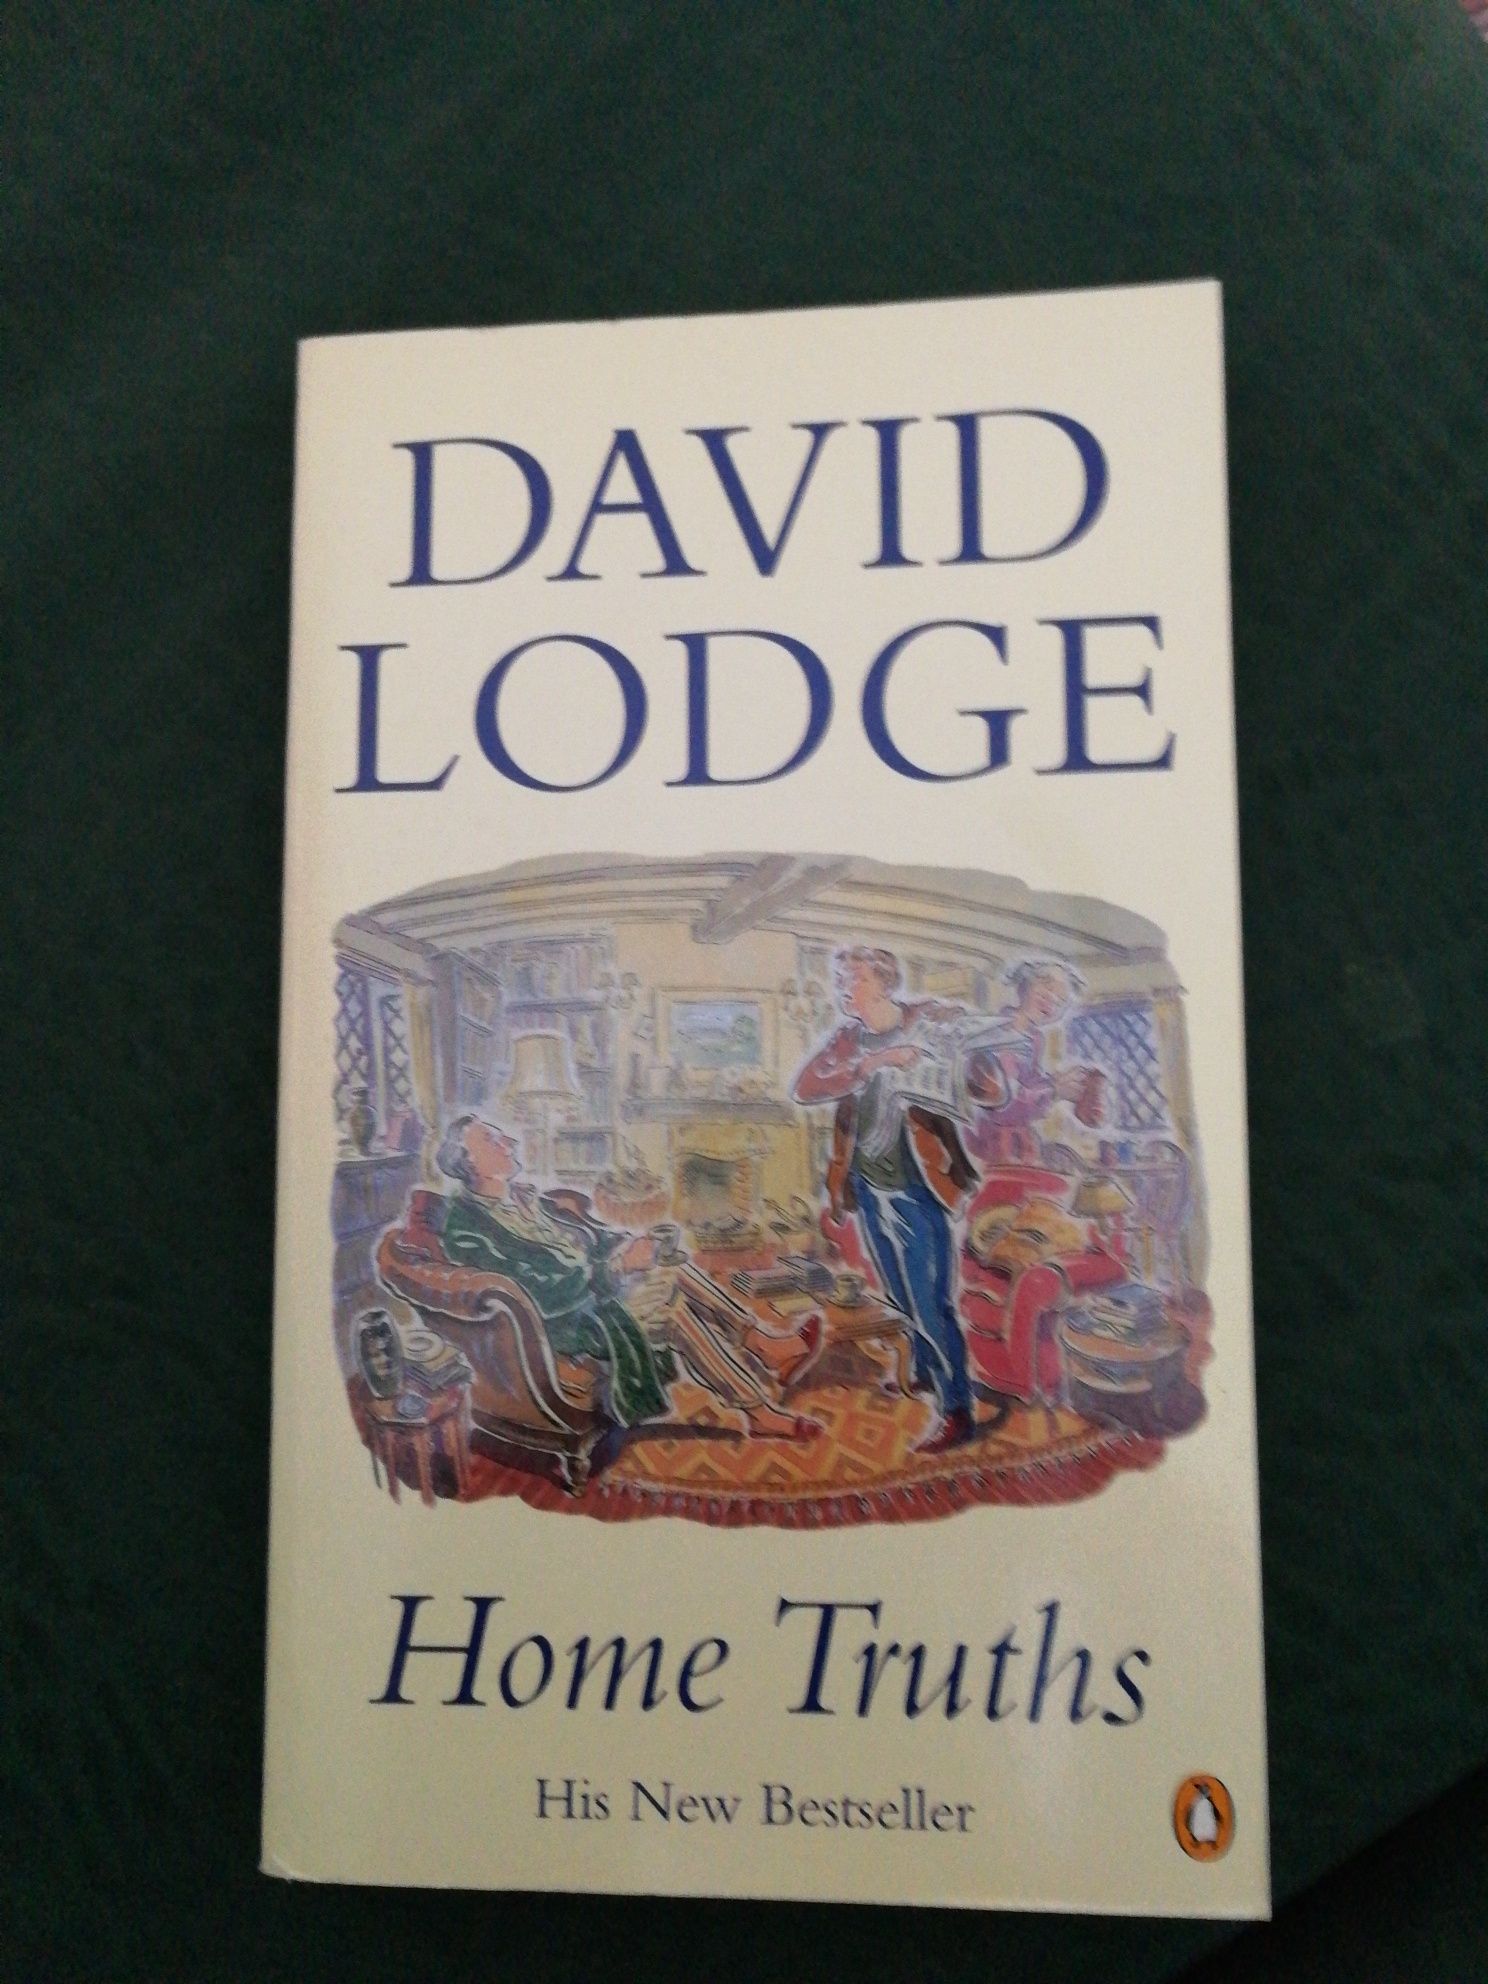 Livro "Home Truths" de David Lodge